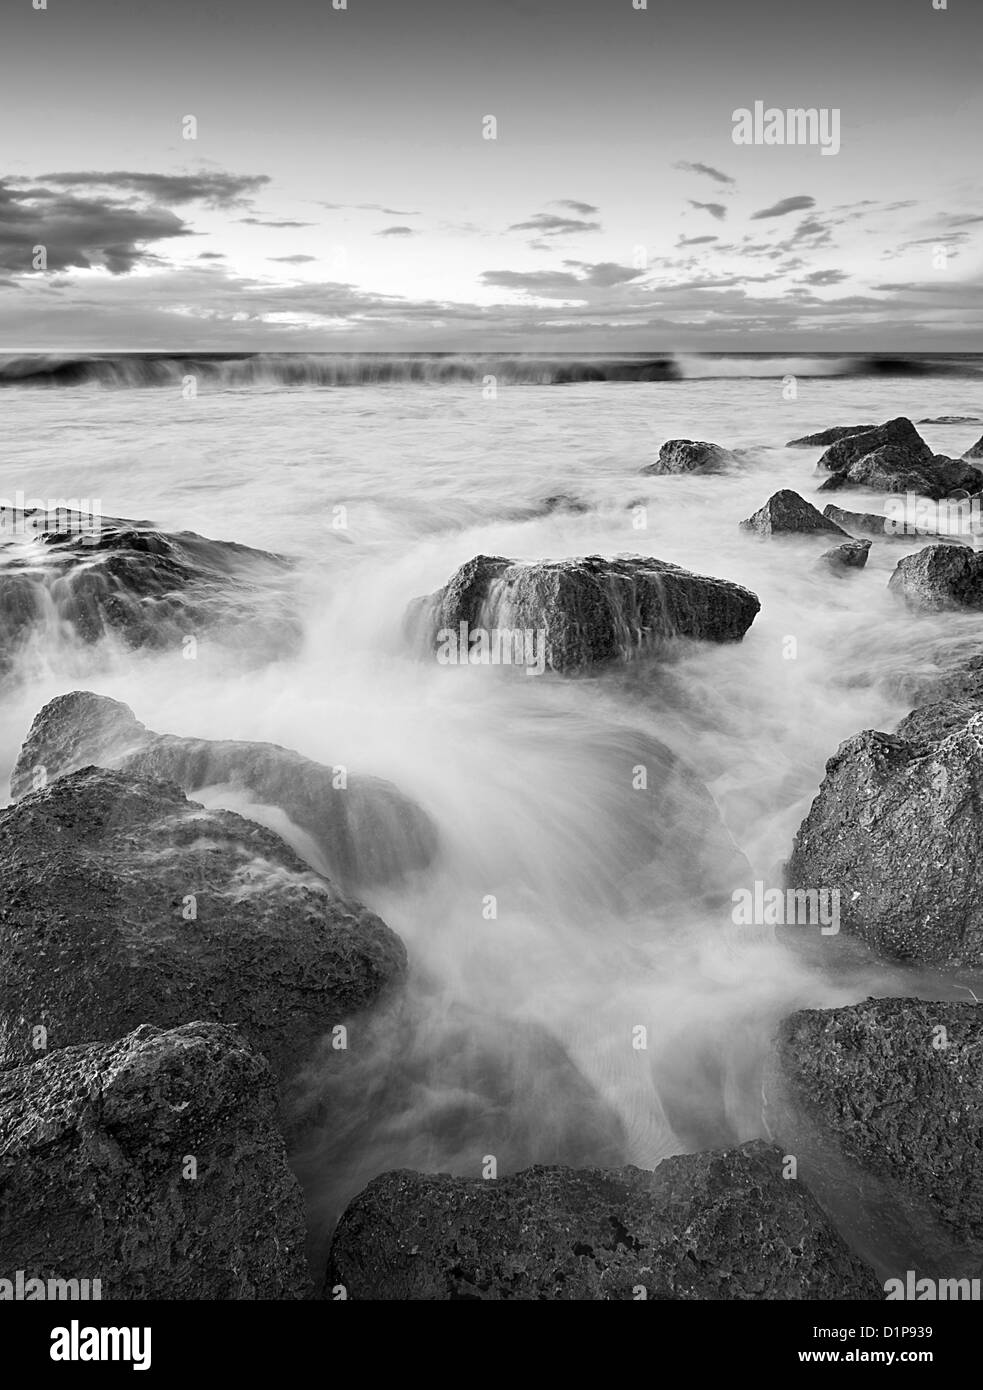 Acqua di seta seascape a costa atlantica Foto Stock